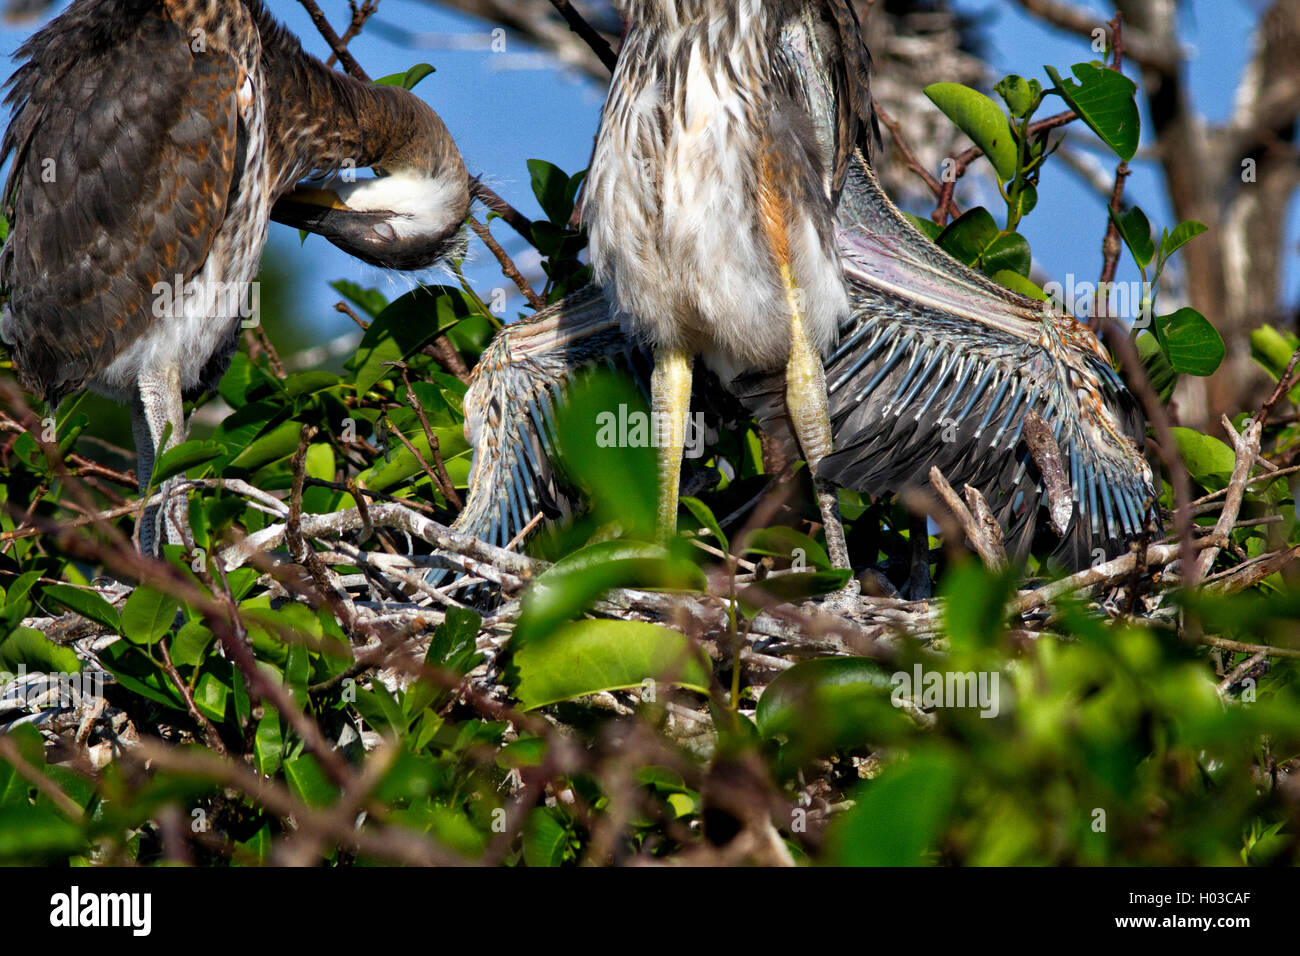 Great Blue Heron Küken in Flügel ausgebreitet Haltung zeigt seine Sekundär- und Pin-Federn in Reihen unfurling aus ihren Hüllen. Stockfoto